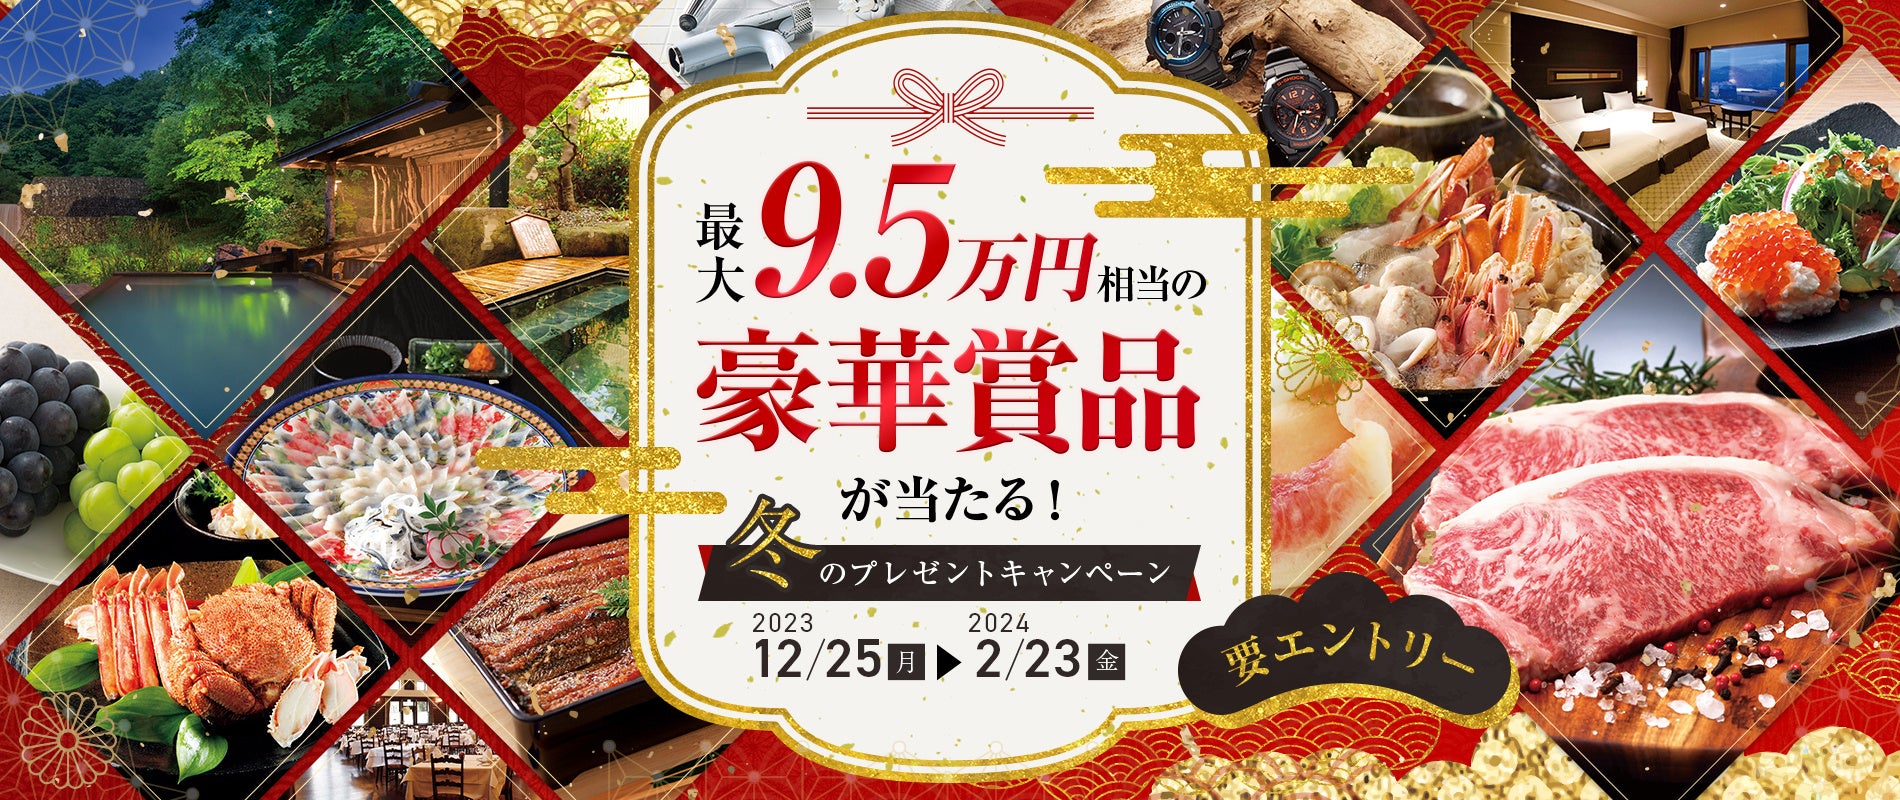 【みんなのFX】最大9.5万円相当のプレゼントが当たる、冬の豪華賞品プレゼントキャンペーンを実施します！